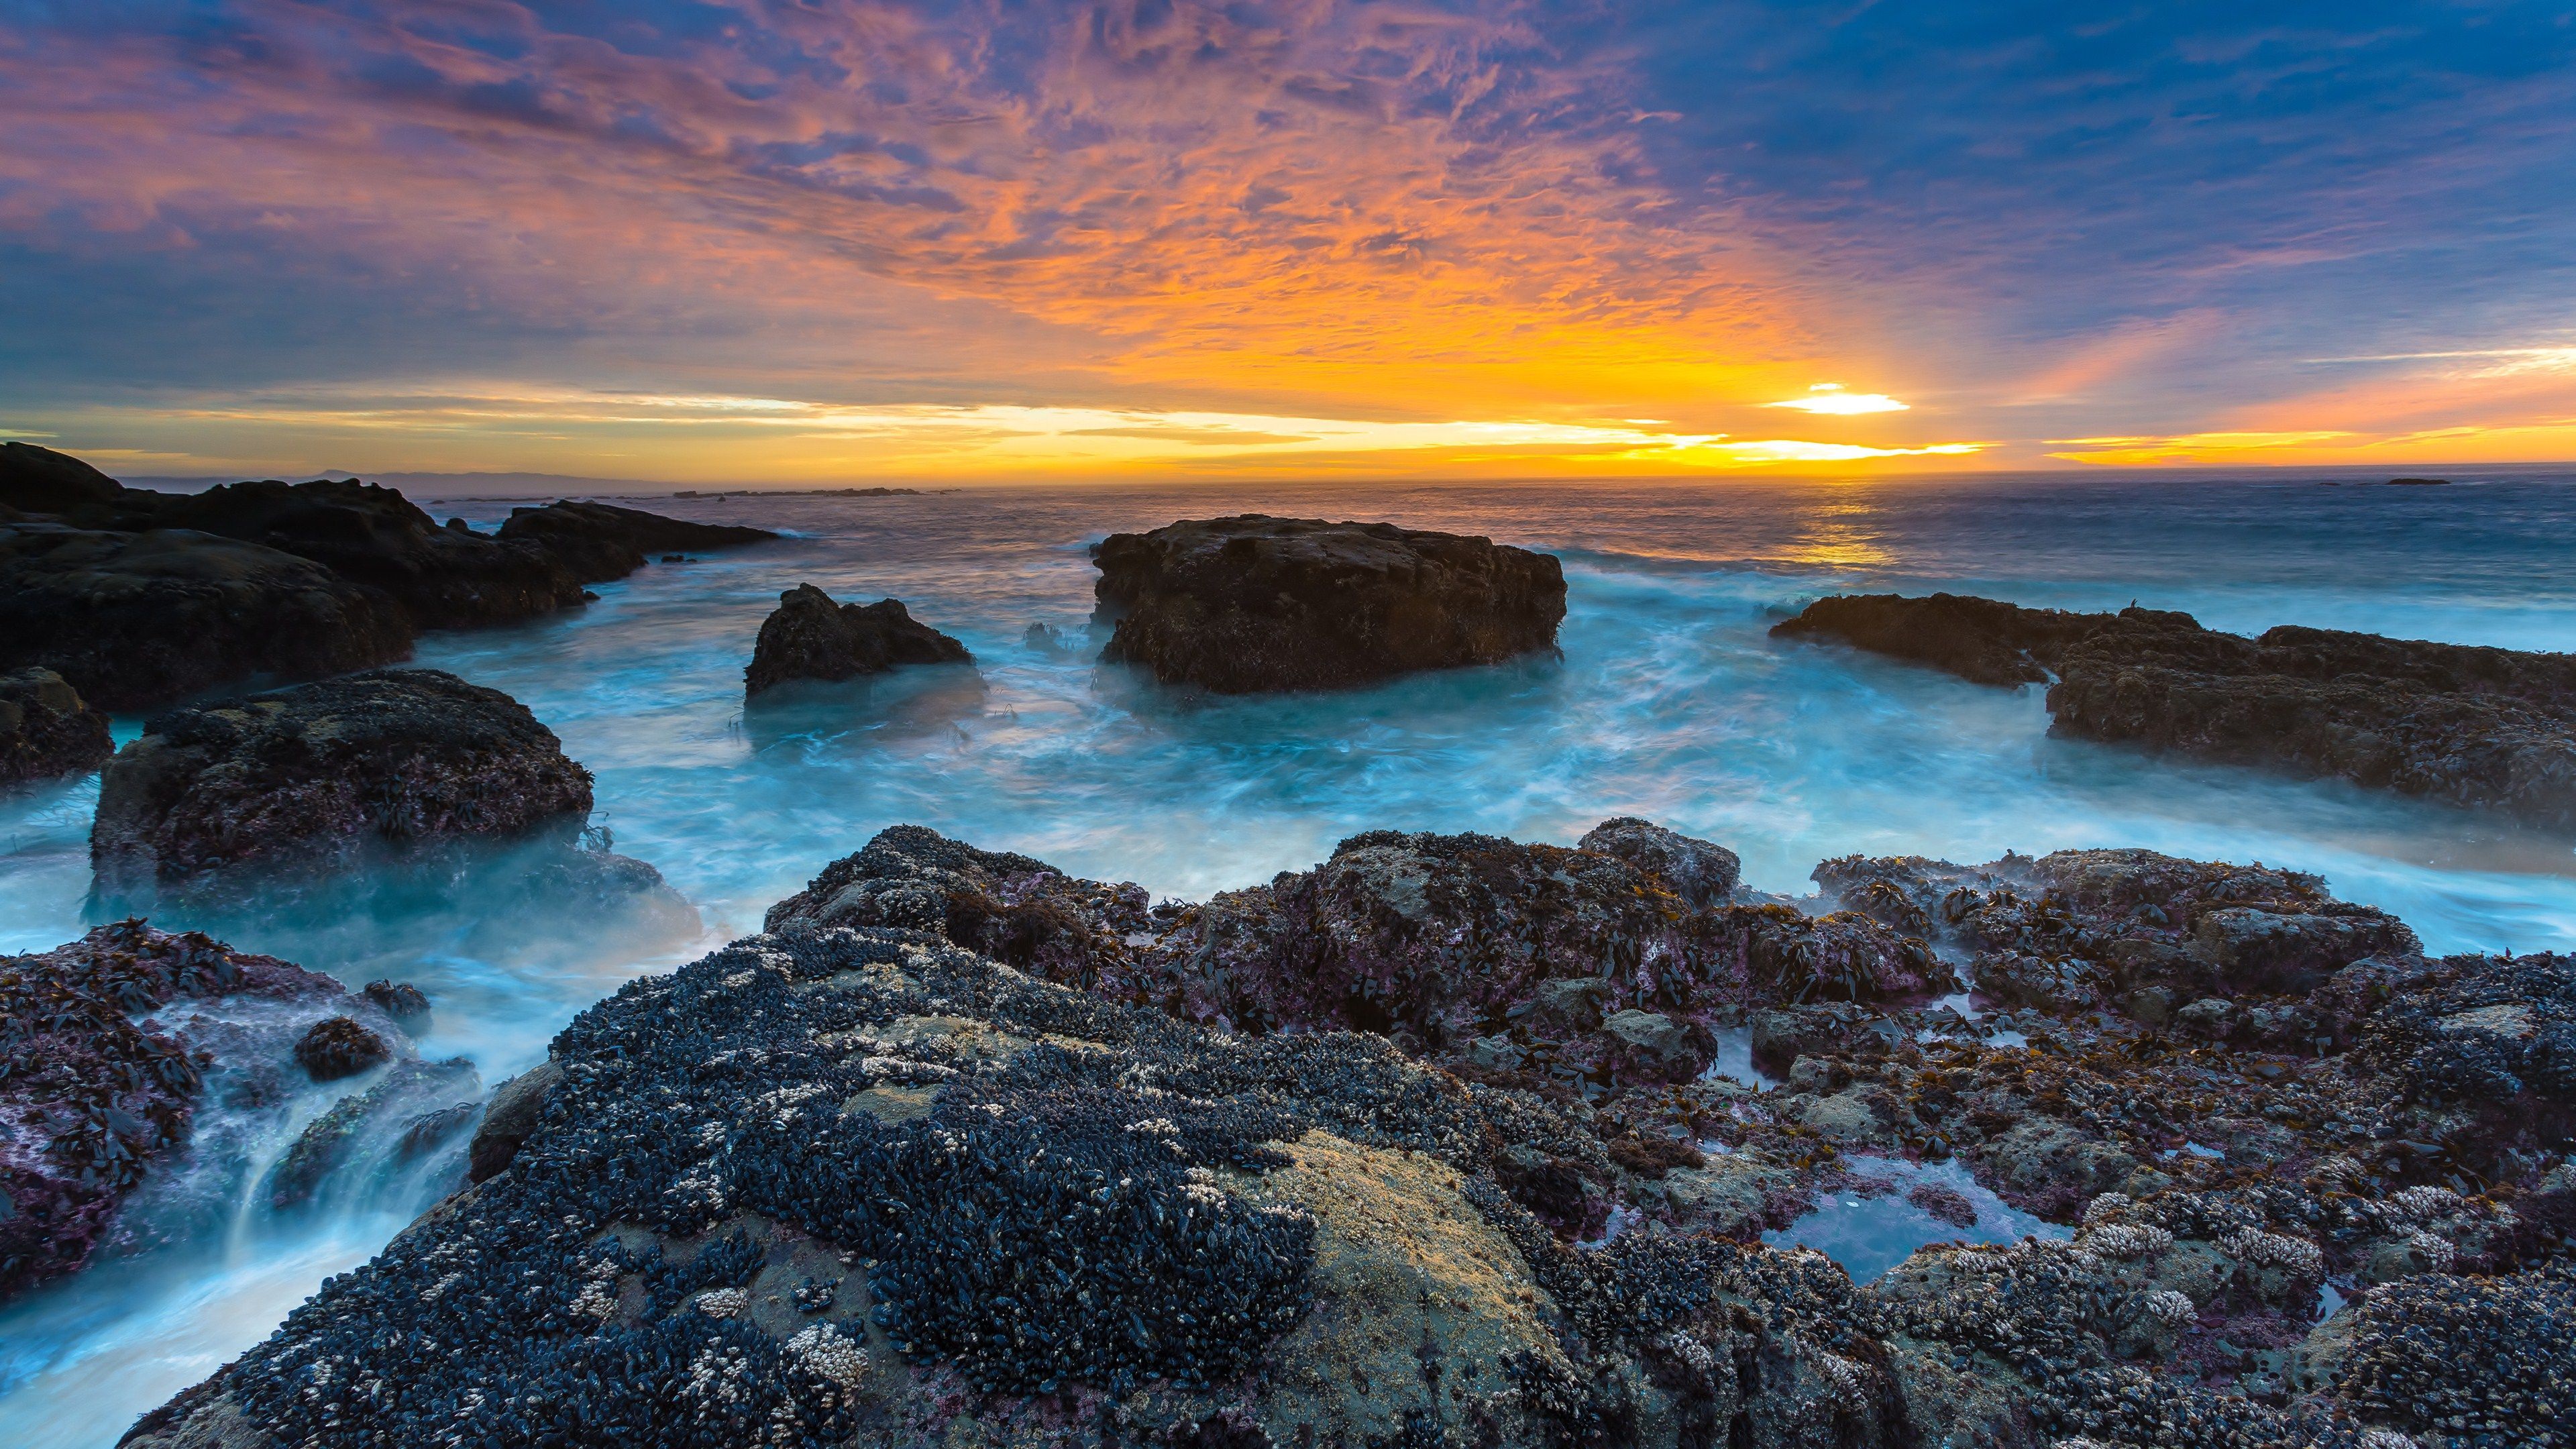 Ocean Sunset 4K Ultra HD wallpaper. Sunset